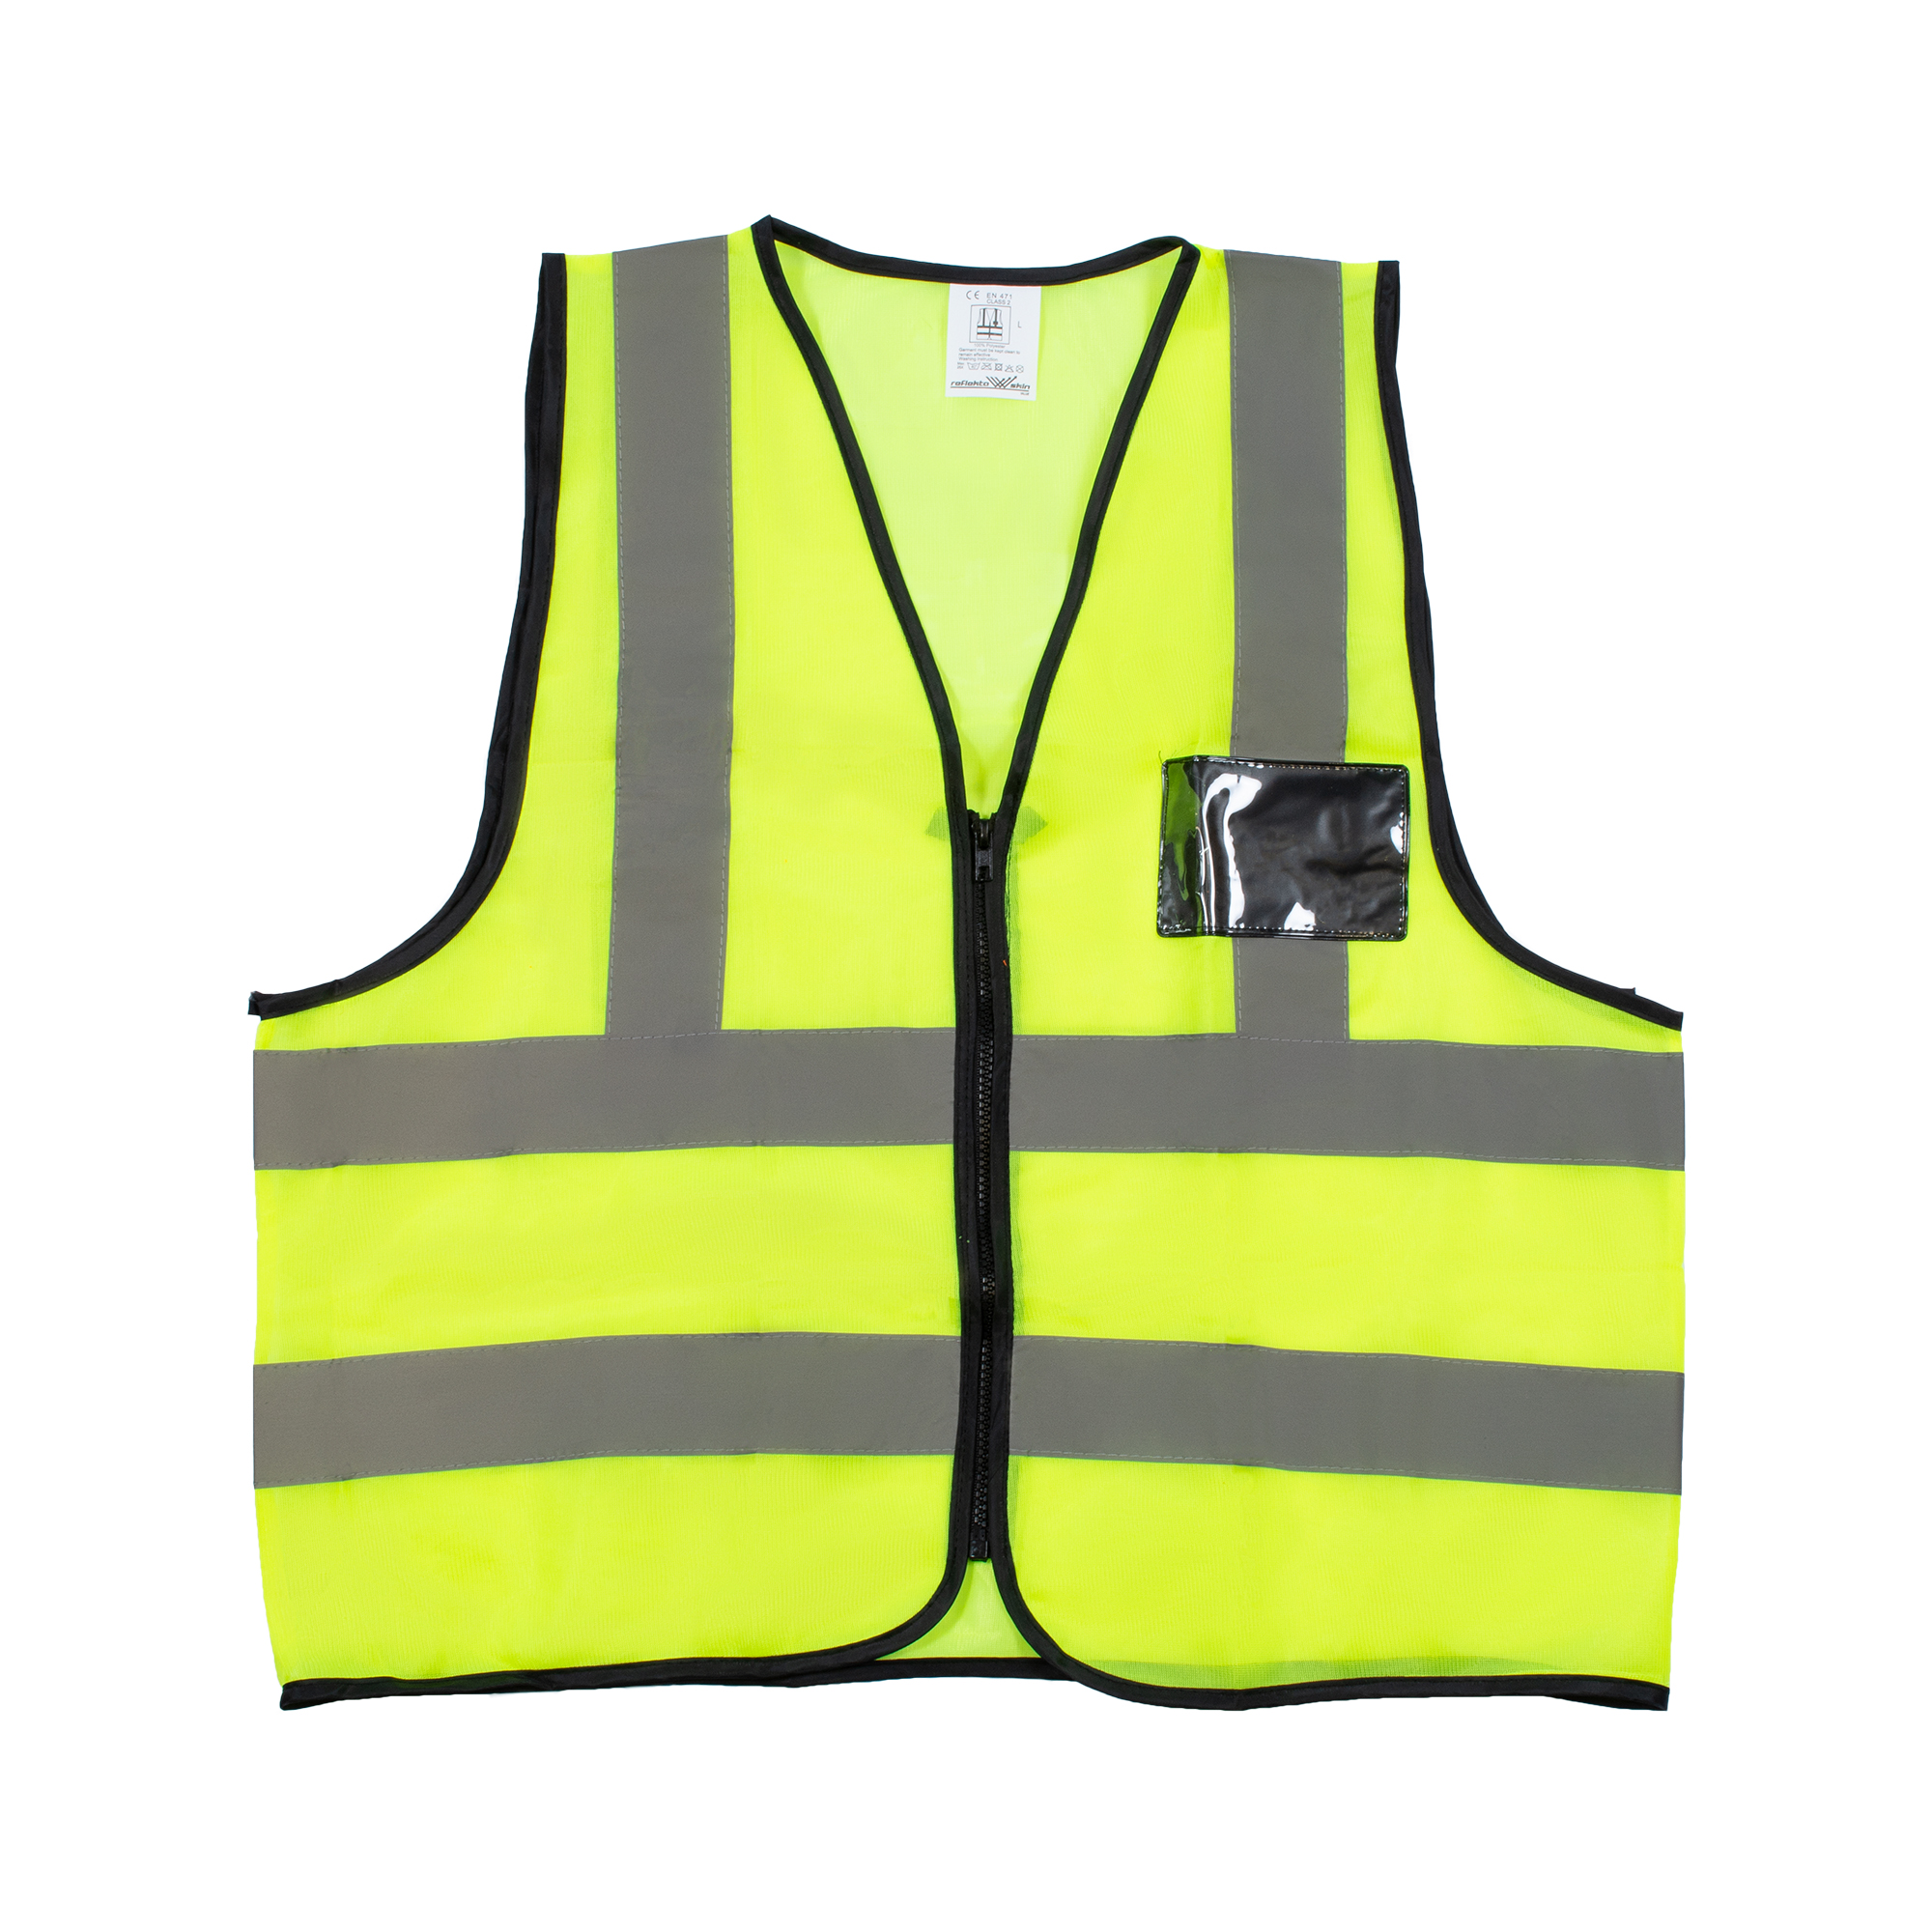 Value Lime Reflective Vest - REBEL Safety Gear